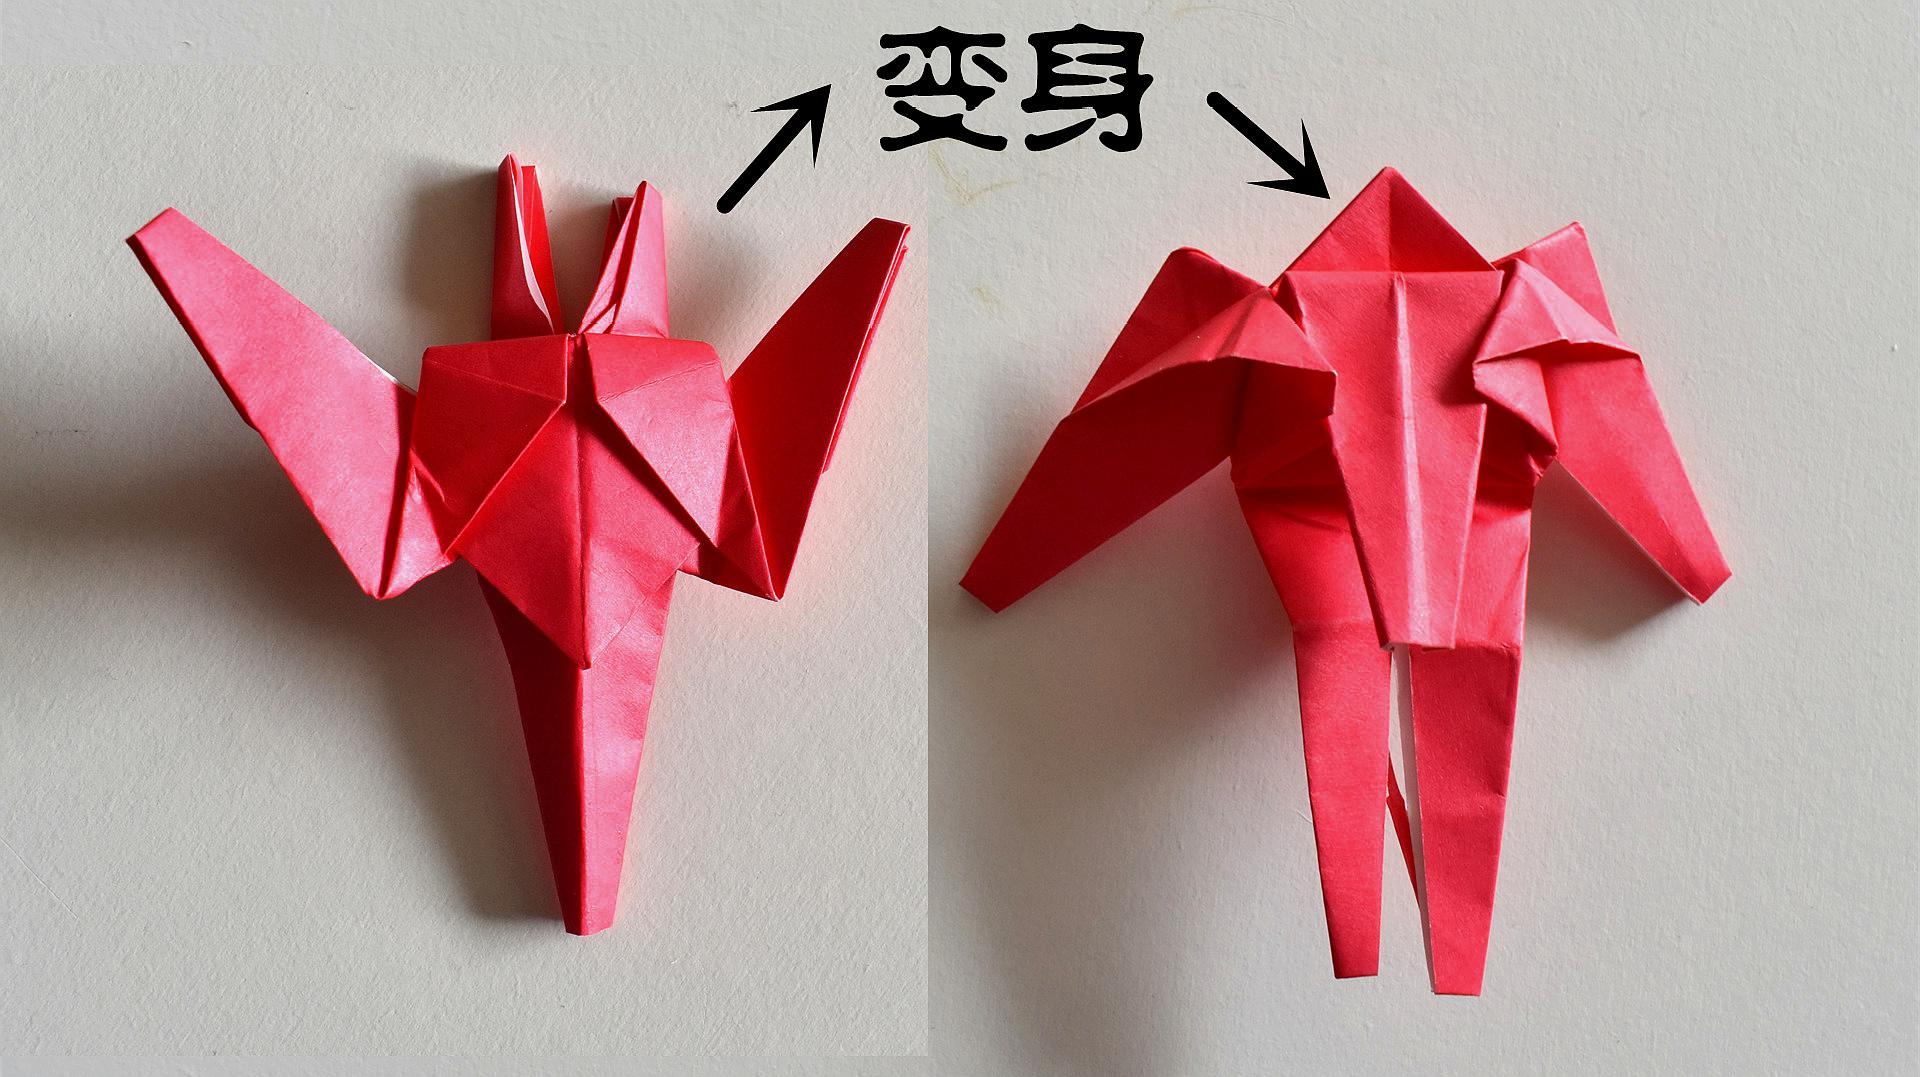 创意折纸教程:折一个变身机器人,这个真的可以变身